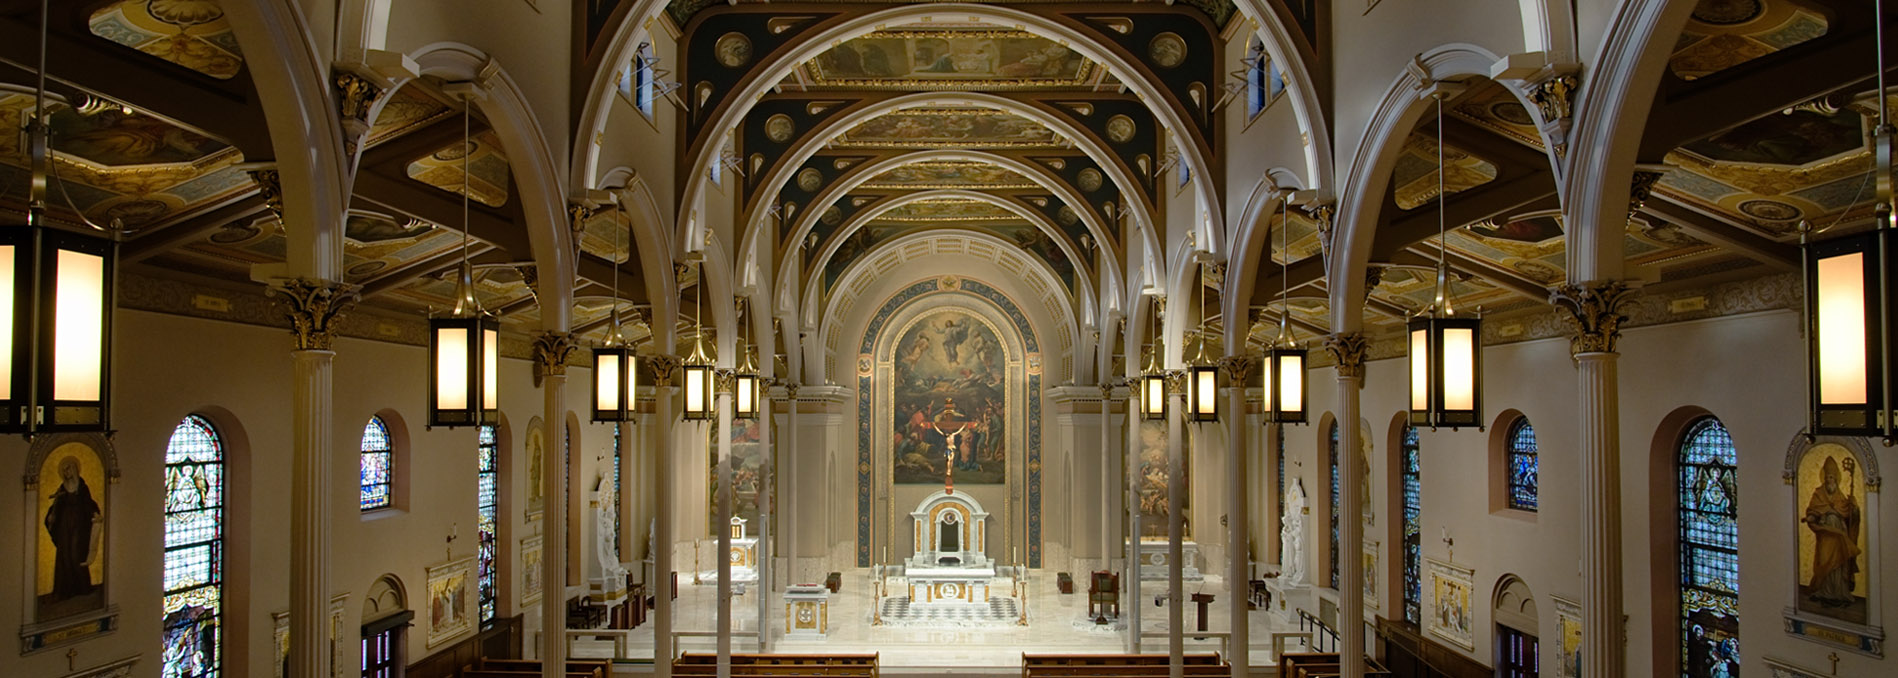 Scranton Church Interior-Architectural